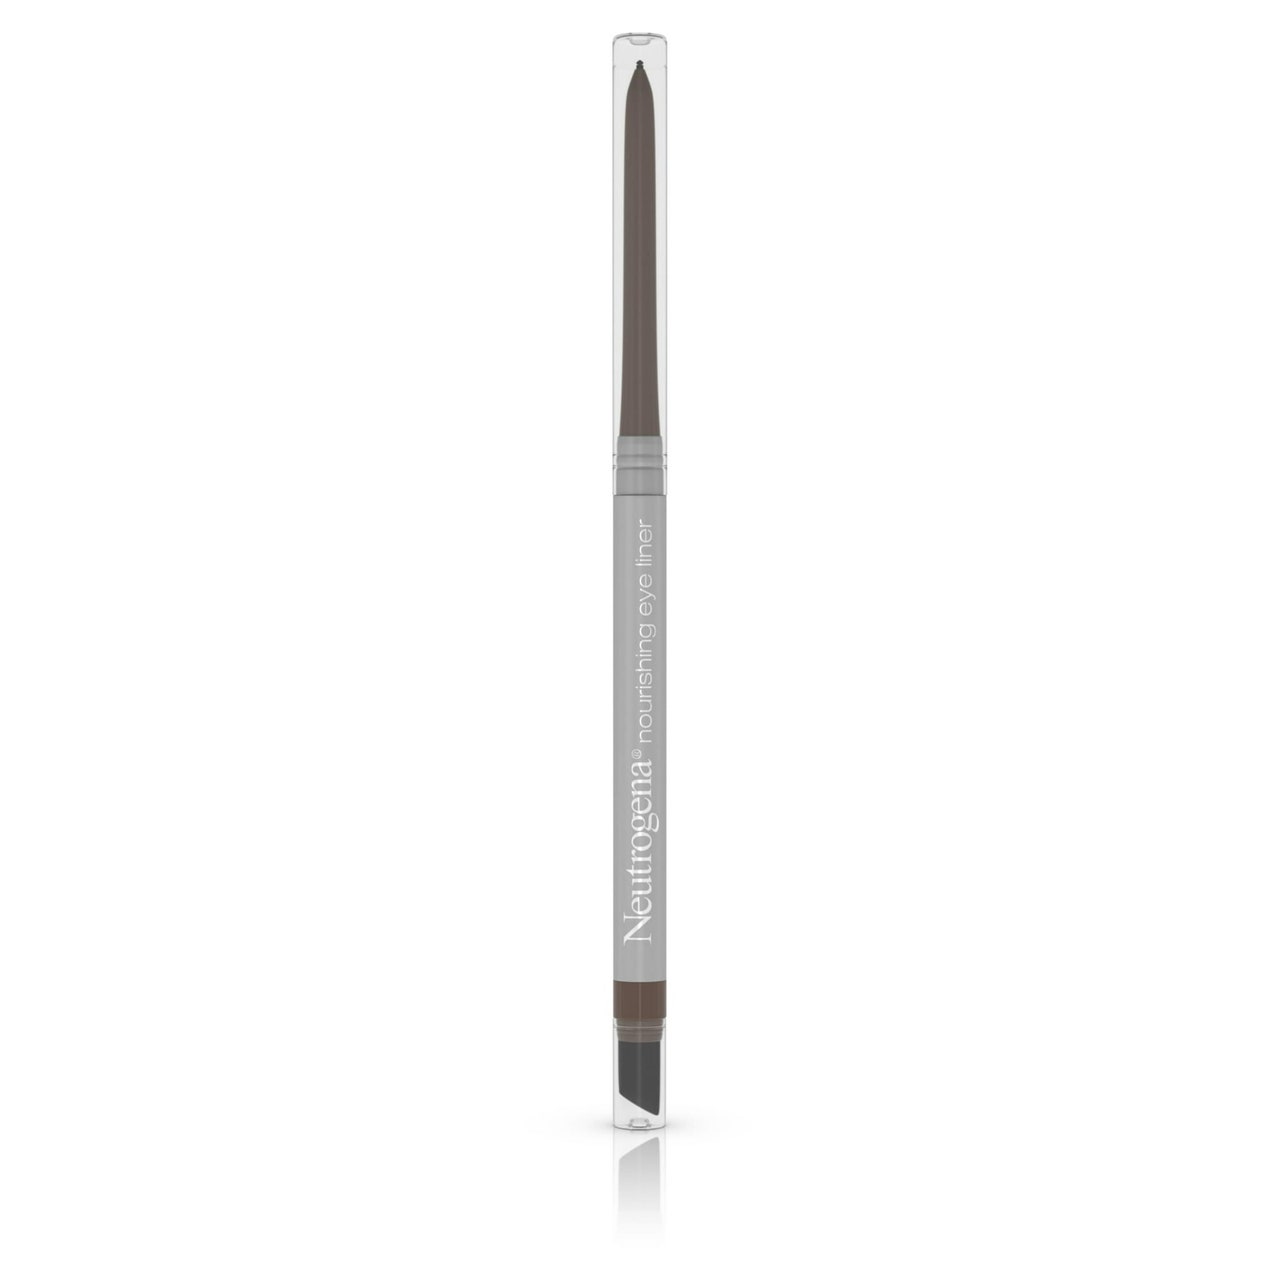 Neutrogena Nährender Eyeliner-Stift in Gewürzschokolade auf weißem Hintergrund